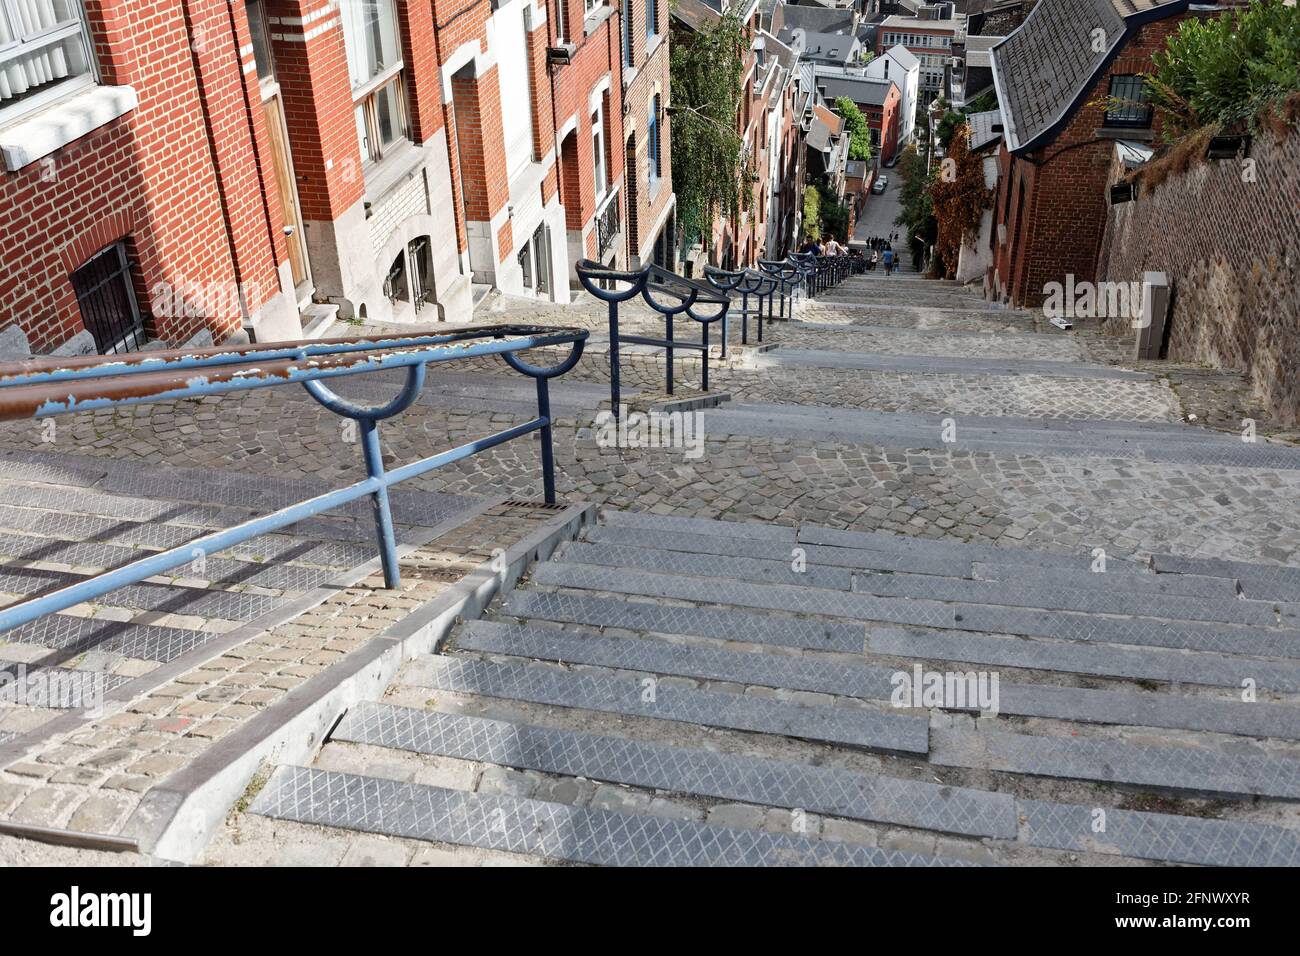 Les escaliers de la montagne de Bueren, Liège, Belgique Stock Photo